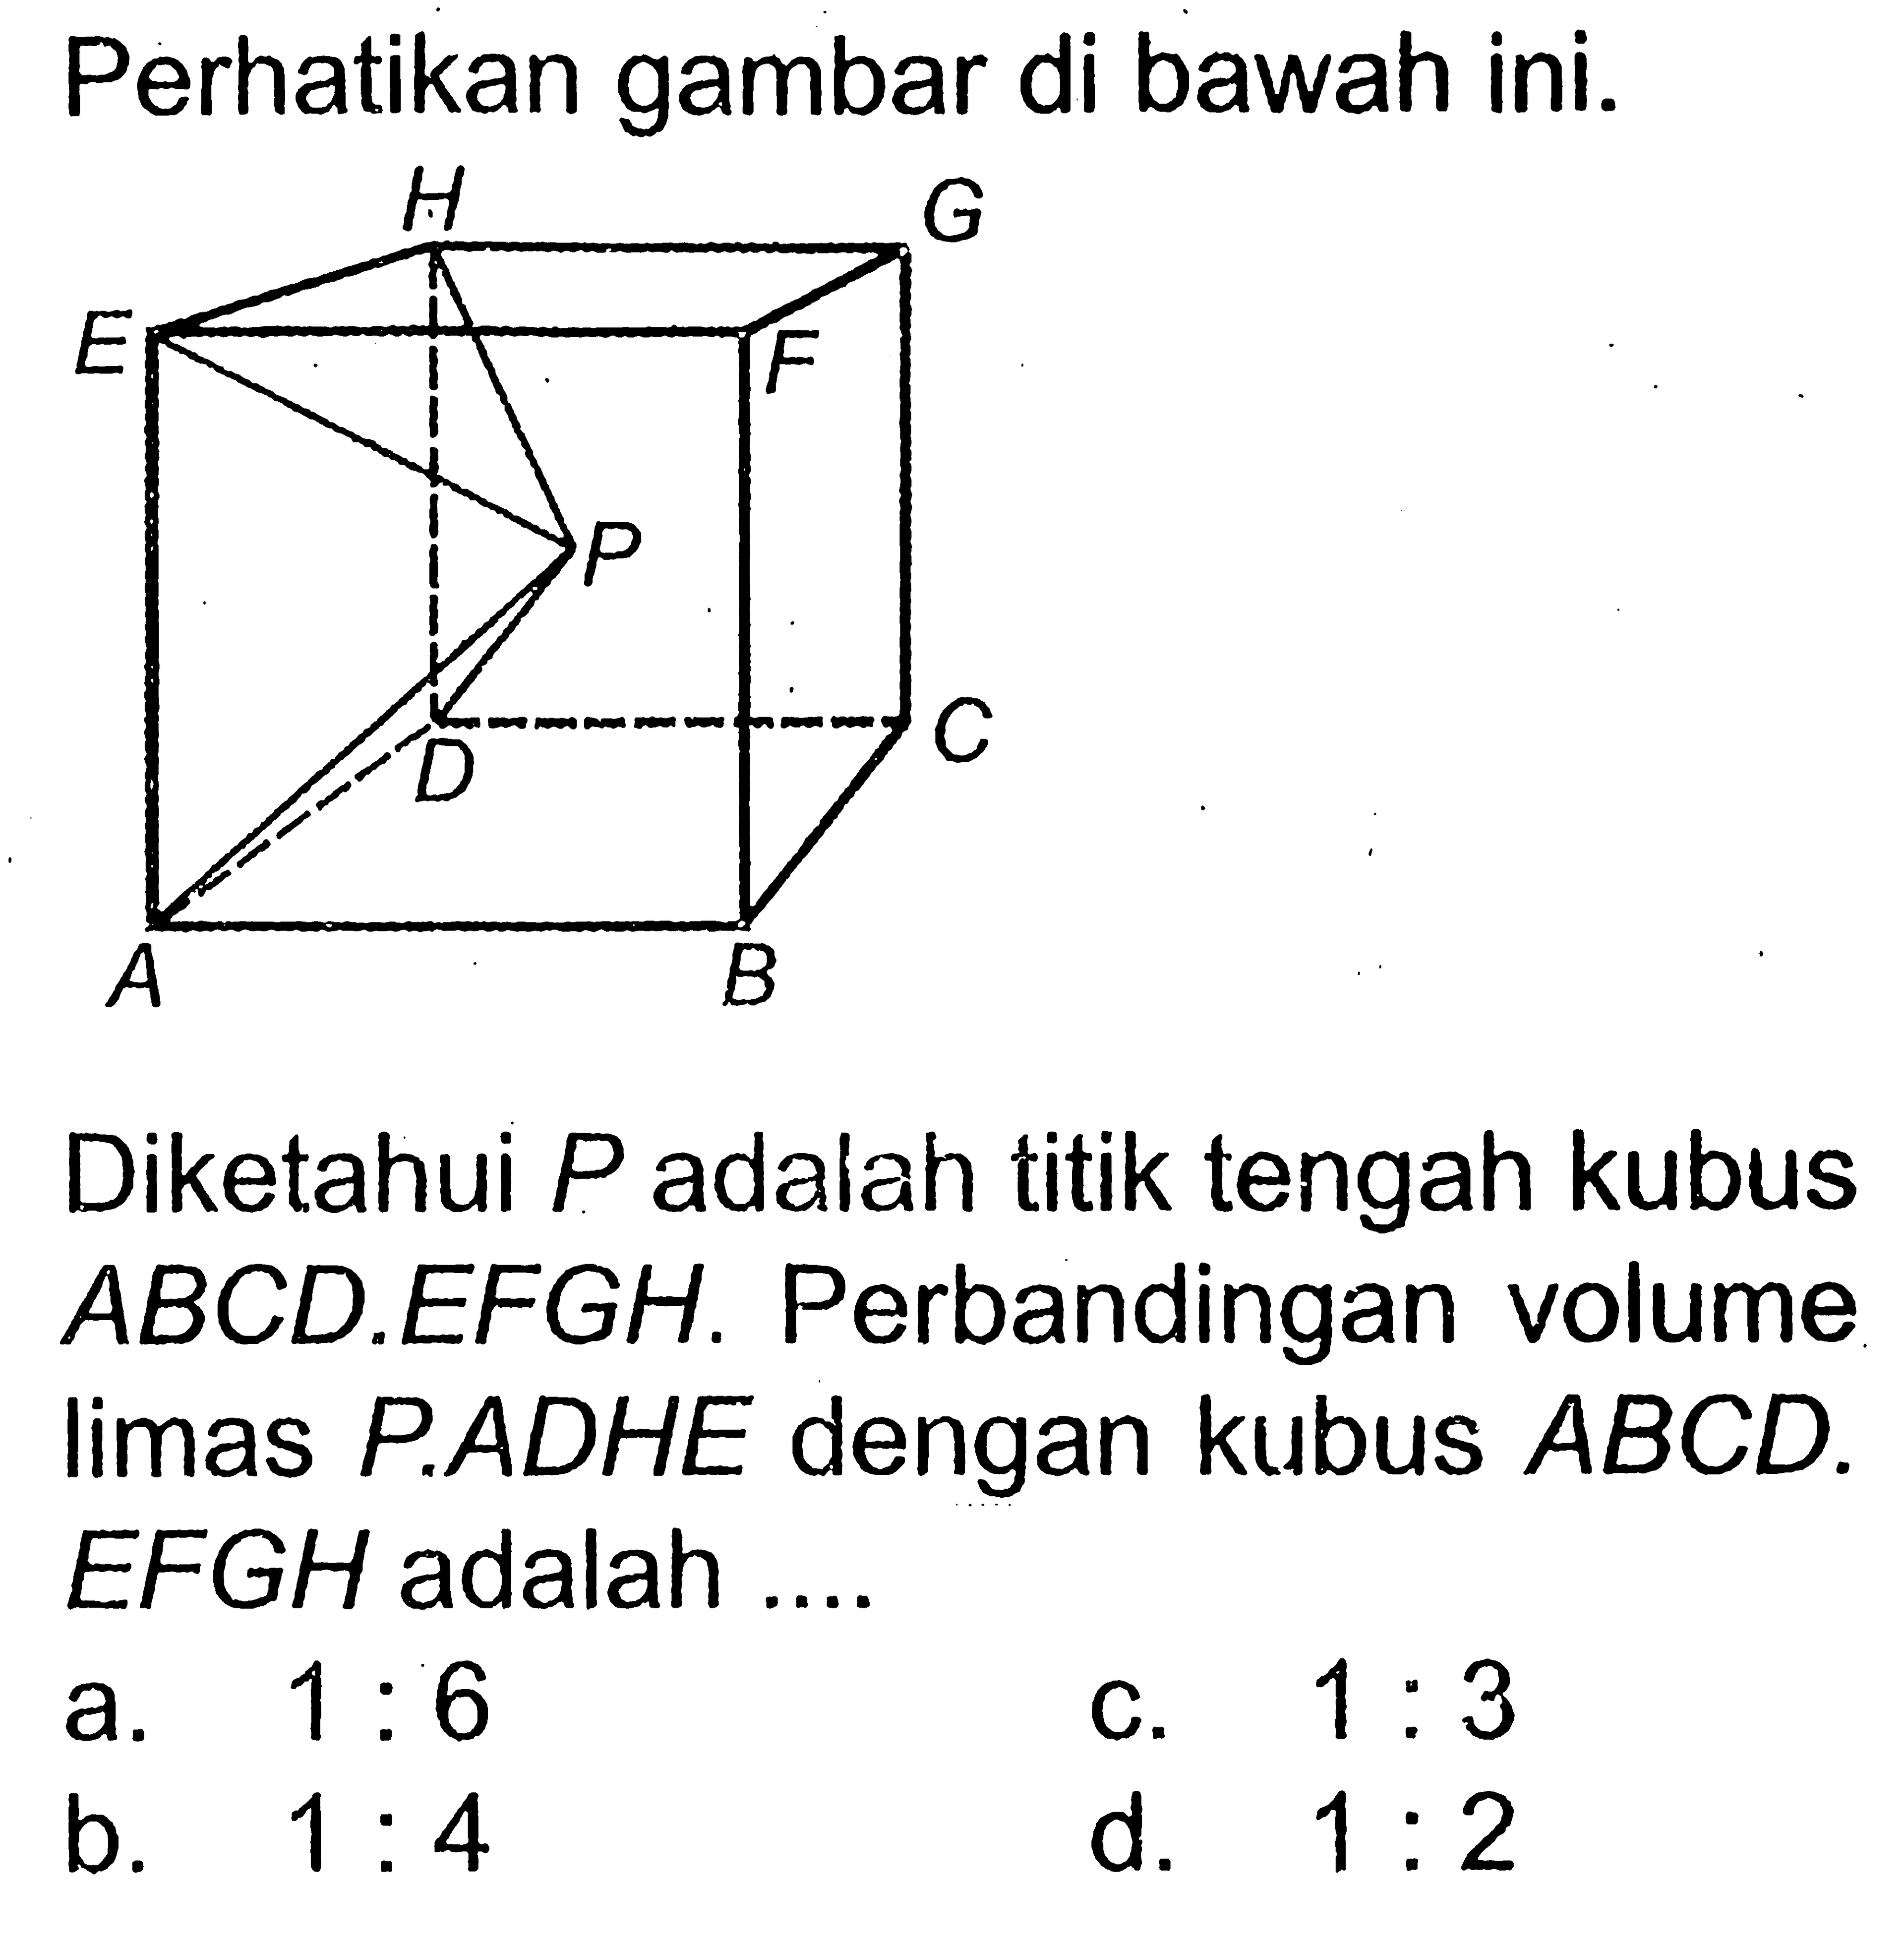 Perhatikan gambar di bawah ini. Diketahui P adalah titik tengah kubus ABCD.EFGH. Perbandingan volume limas P.ADHE dengan kubus ABCD.EFGH adalah....